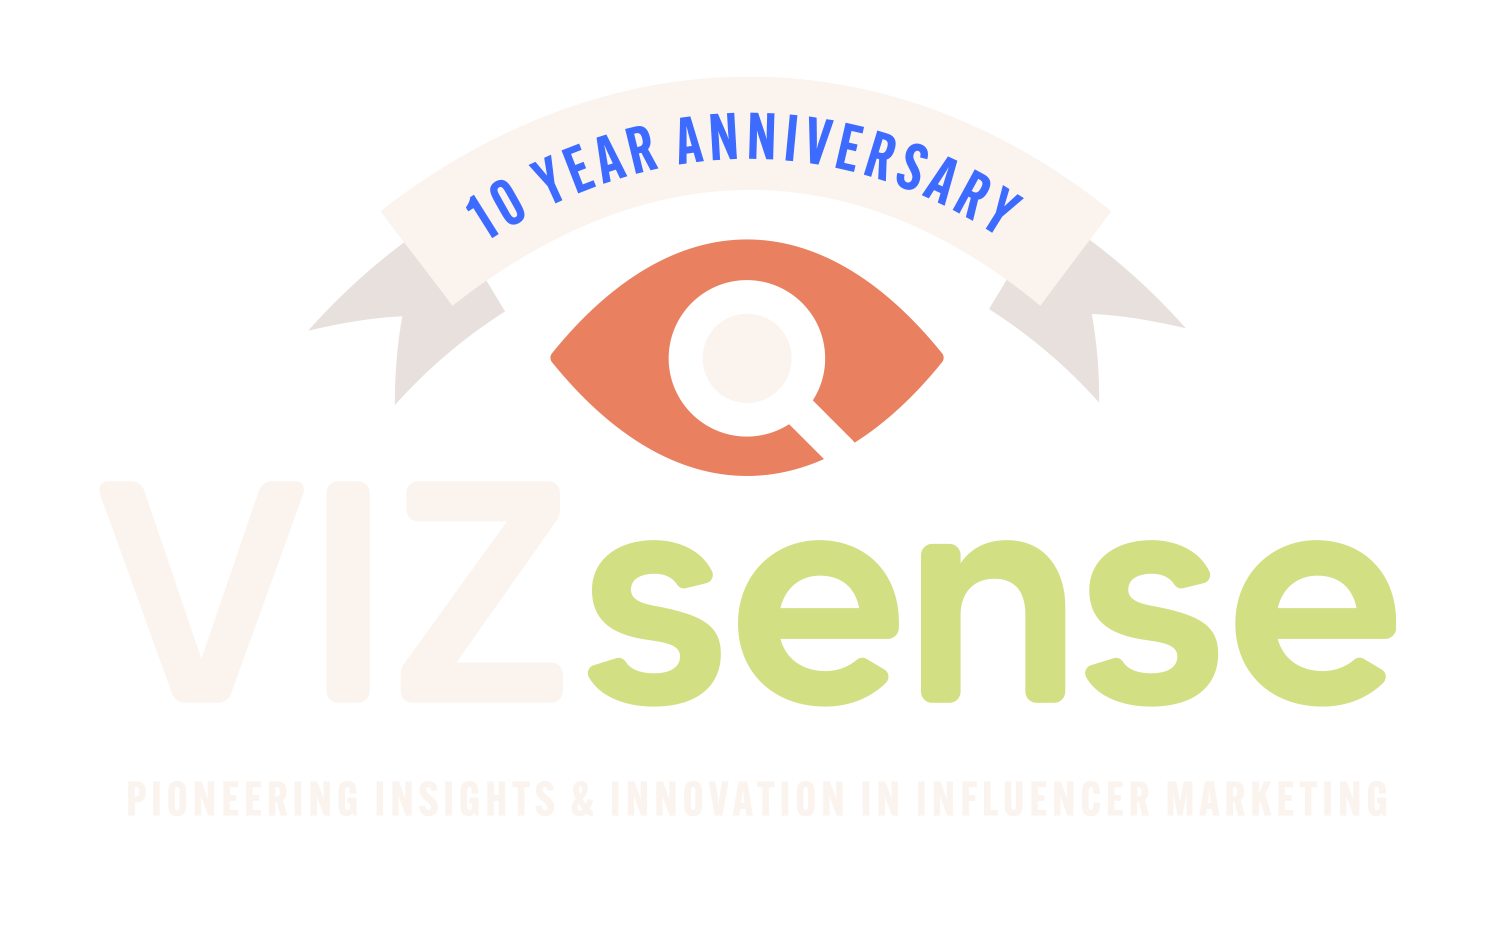 vizsense tenth anniversary logo